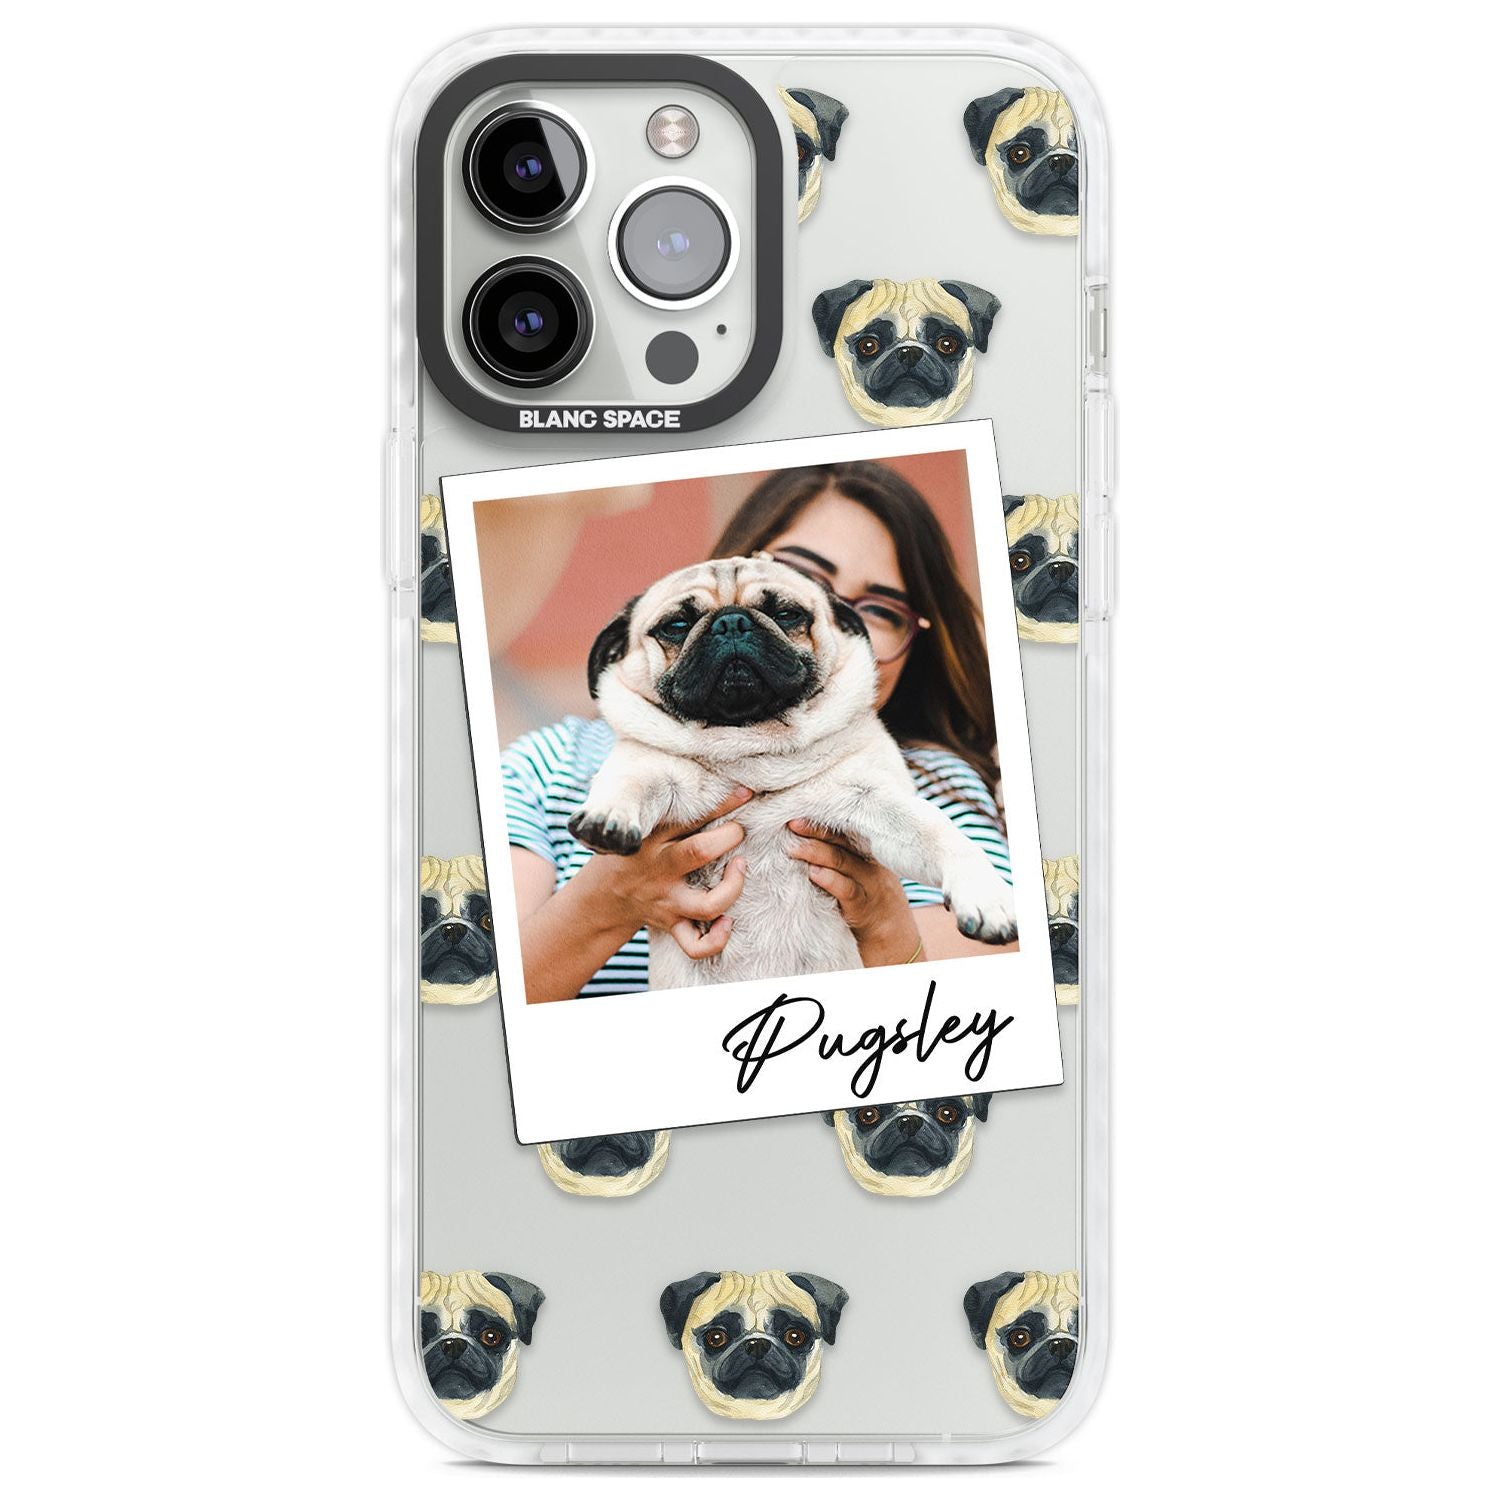 Personalised Pug - Dog Photo Custom Phone Case iPhone 13 Pro Max / Impact Case,iPhone 14 Pro Max / Impact Case Blanc Space